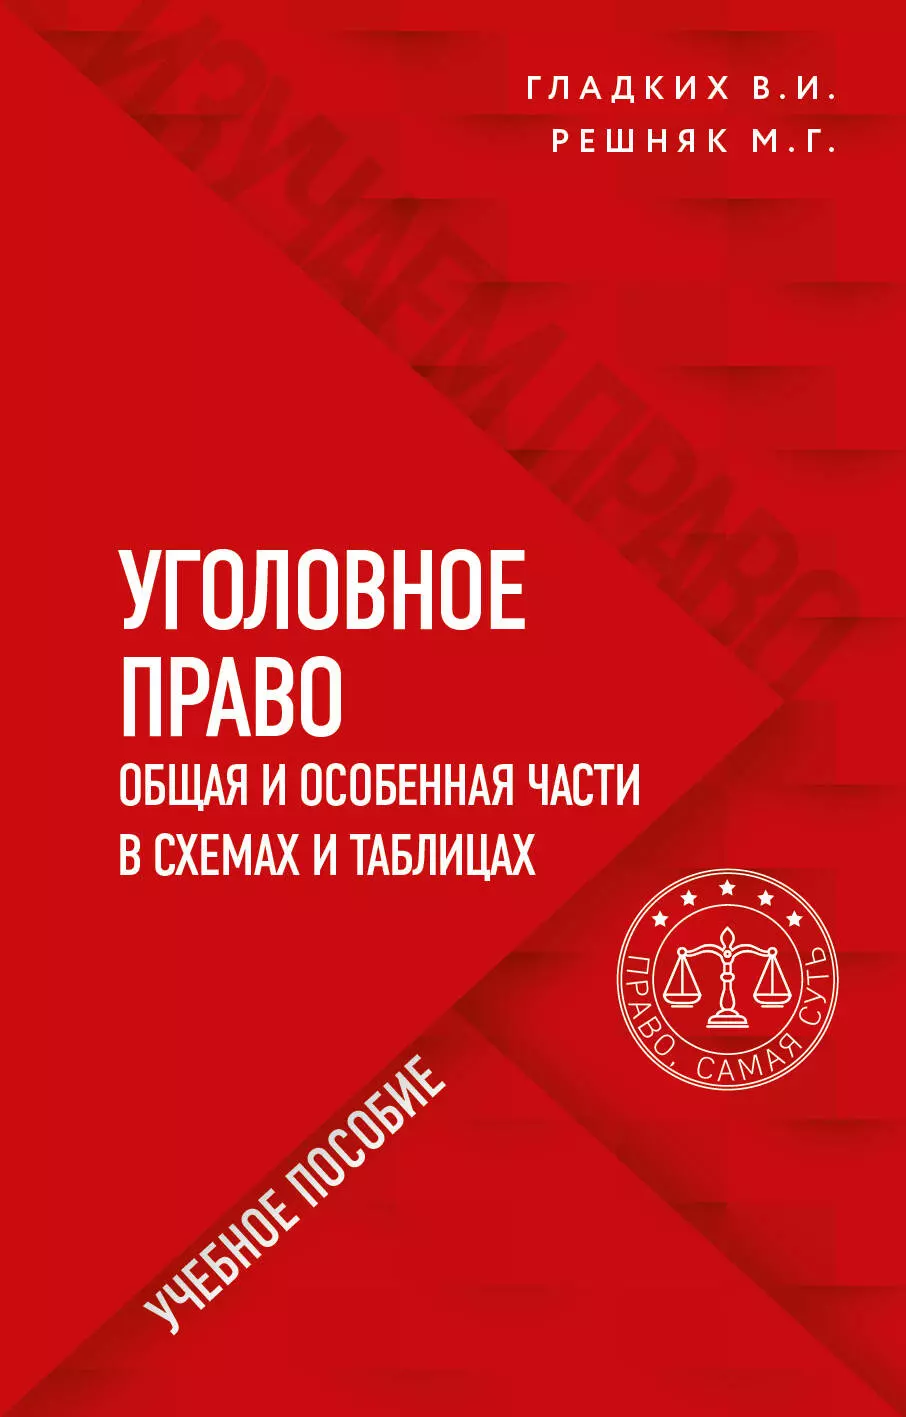 Гладких Виктор Иванович - Уголовное право в схемах и таблицах. Общая и особенная части